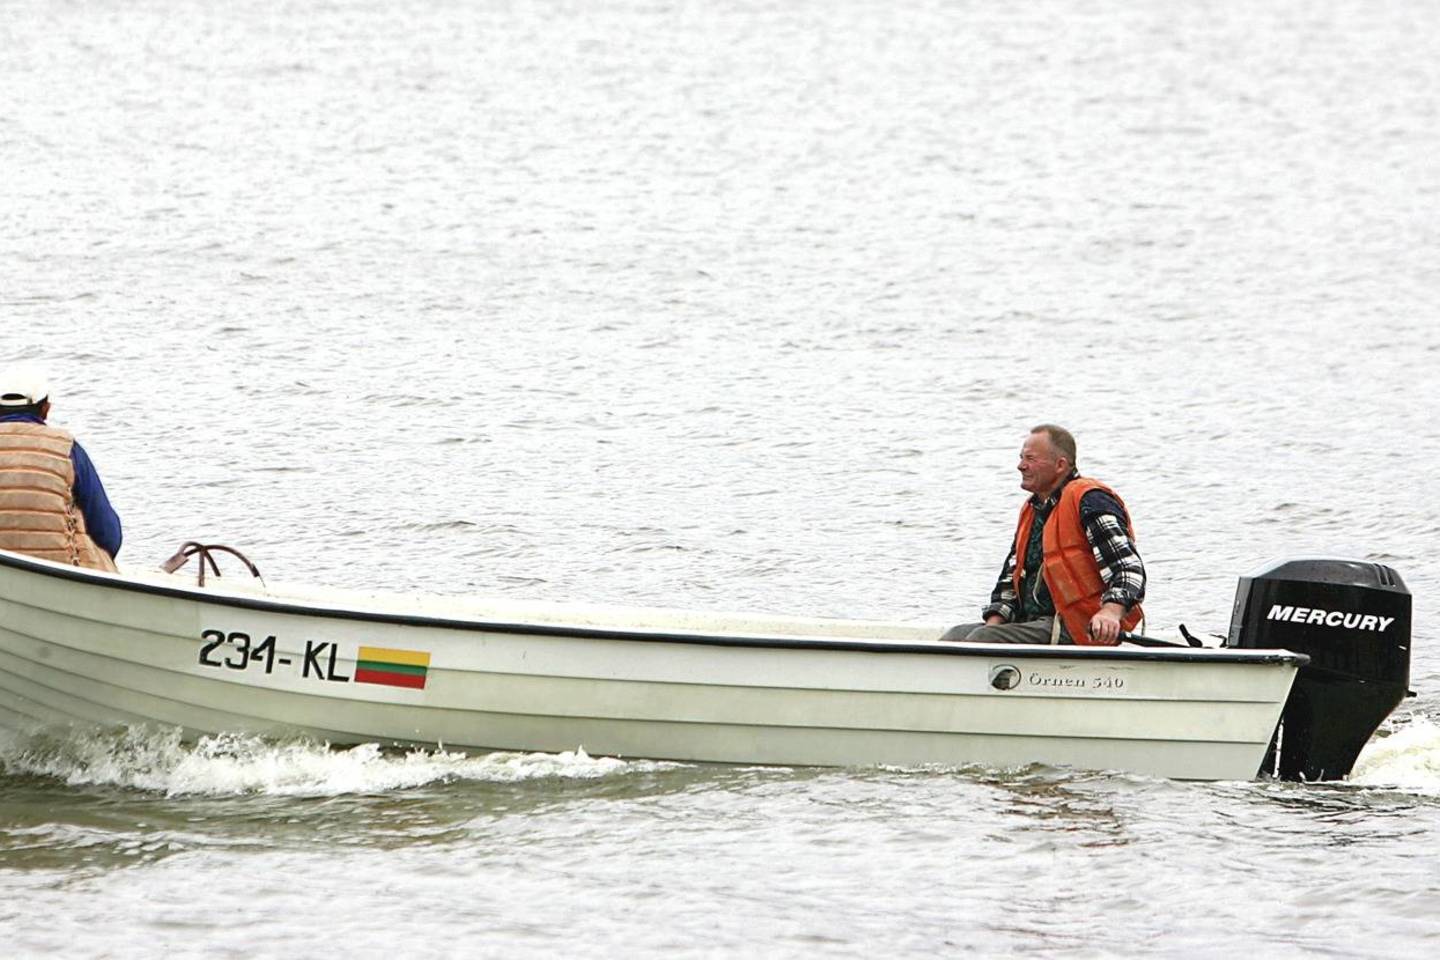 Prie paprastos valties prikabinę variklį žvejai išsyk plaukti į ežerą negali.